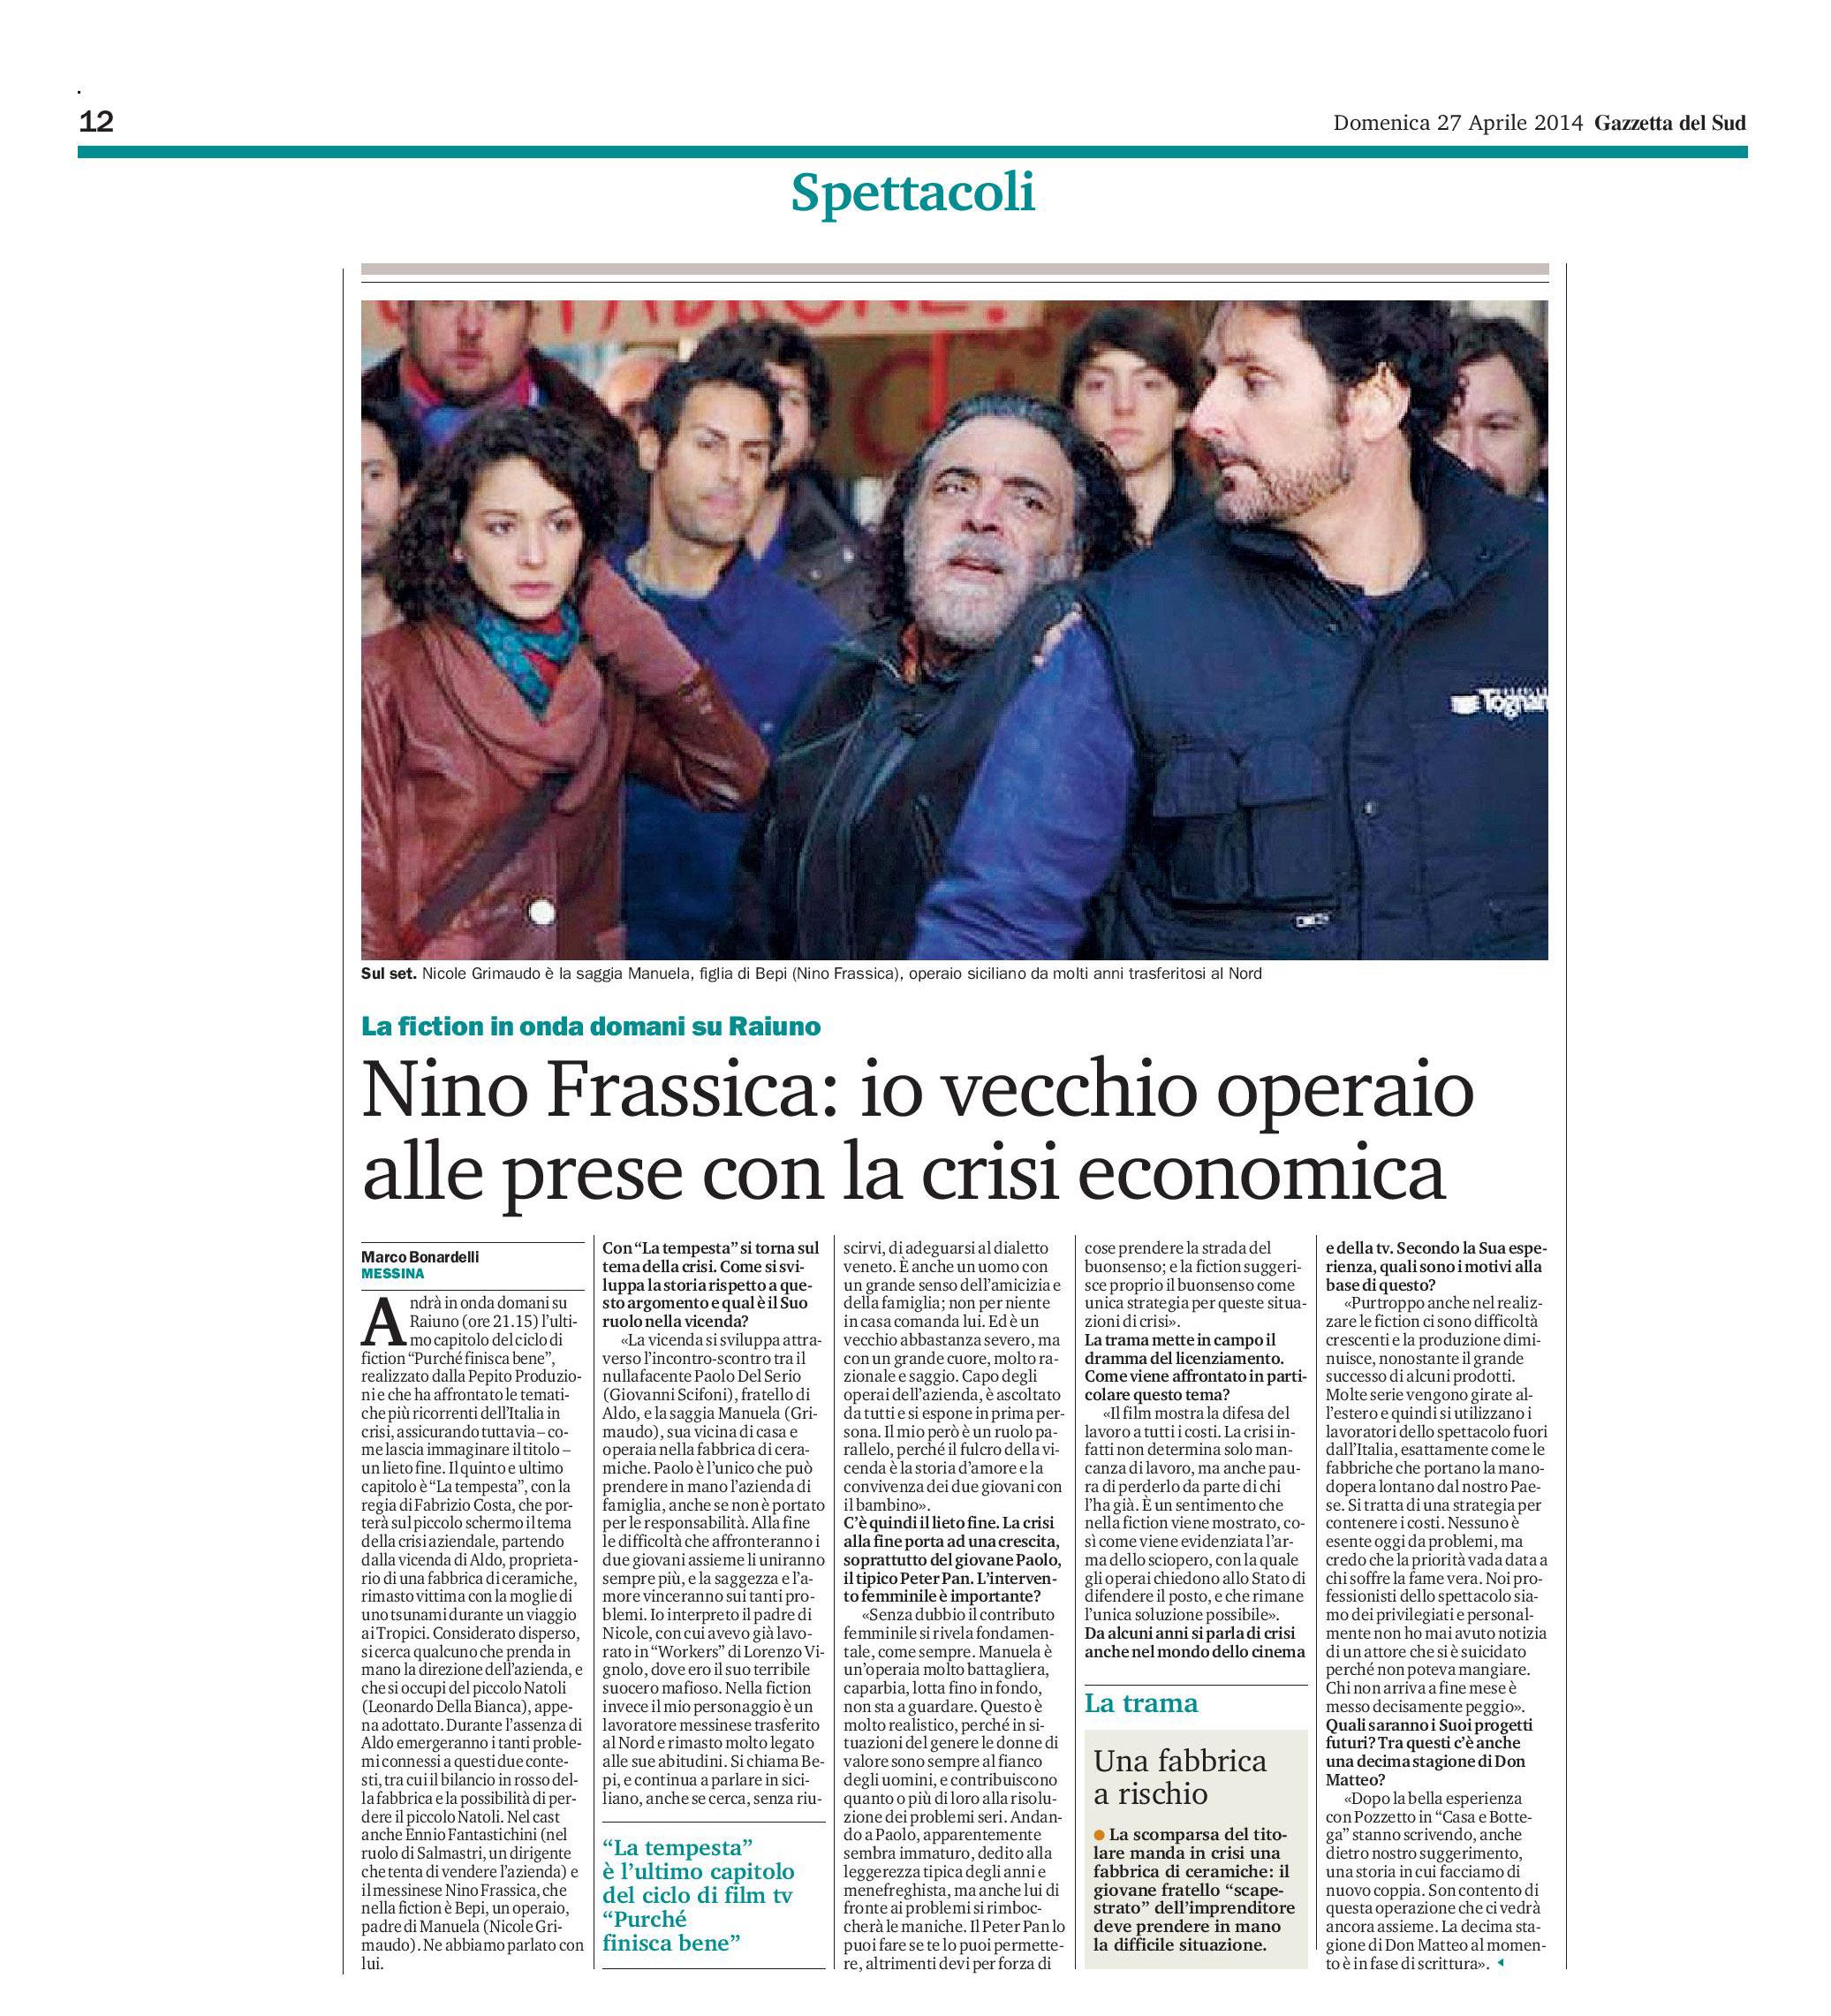 55 - Intervista a Nino Frassica su La tempesta - 27 aprile 2014.jpg